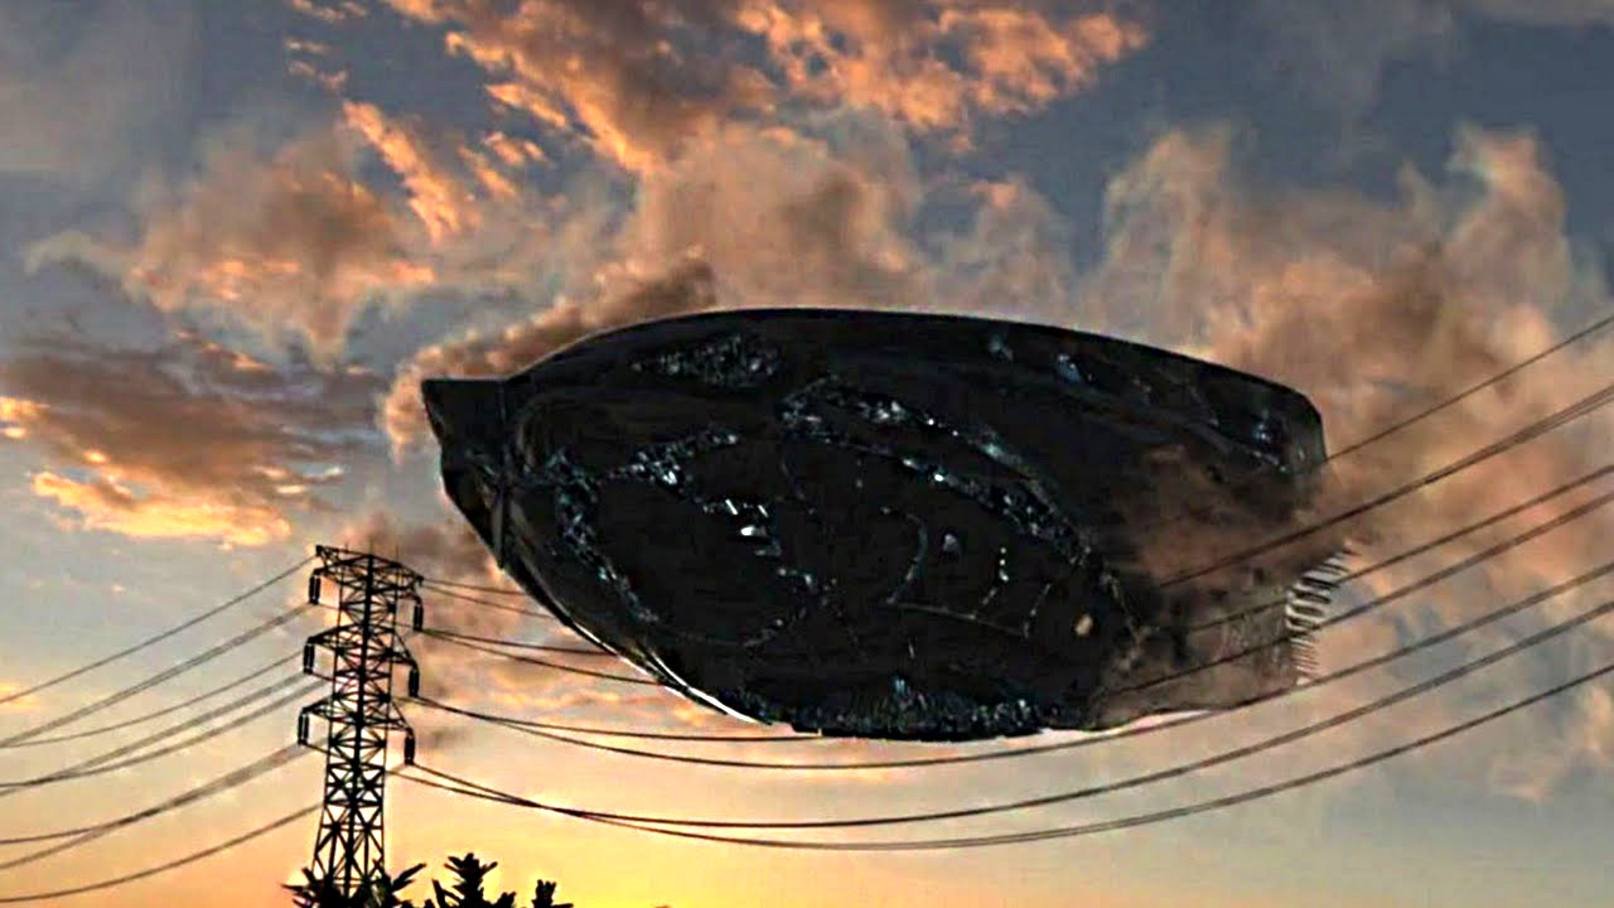 Flying object. НЛО "летающая тарелка" Губенко. НЛО UFO неопознанные летающие объекты. Корабль инопланетян на земле. Гигантское НЛО.